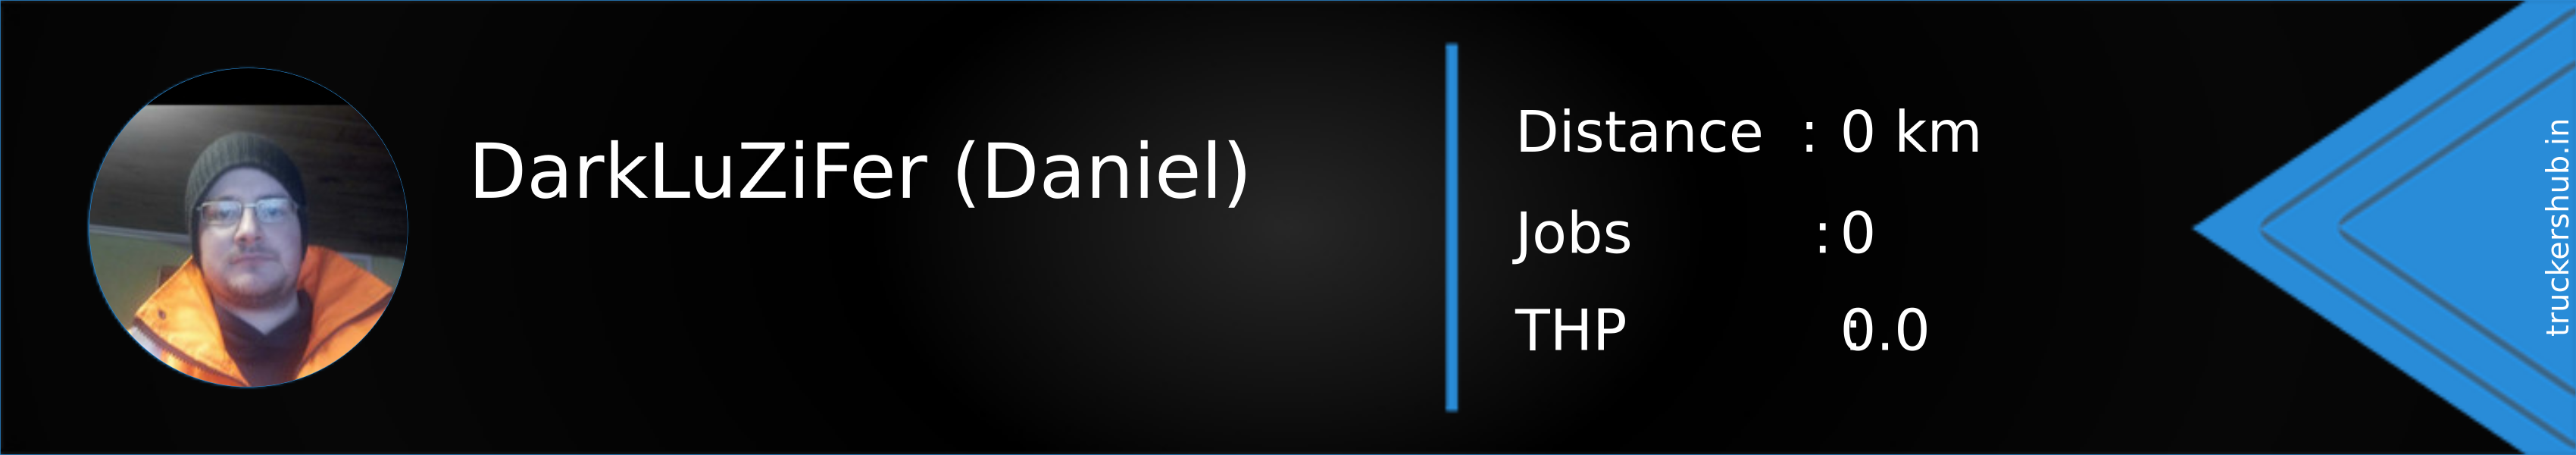 DarkLuZiFer (Daniel) Banner